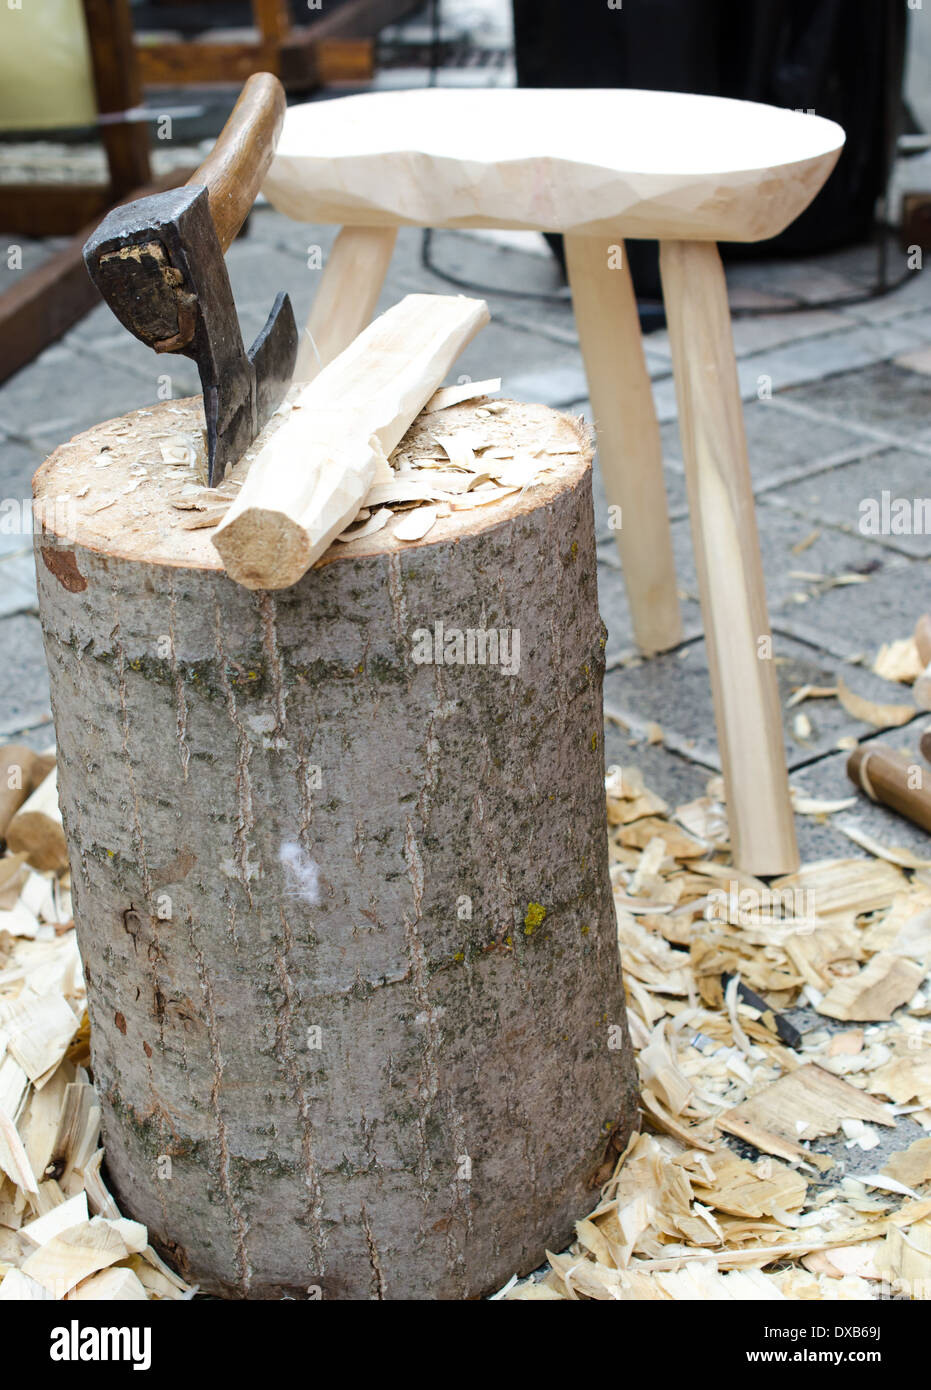 Ein Bild von einer Werkbank Schreiner, Holzspäne, Werkzeugen und einer Axt Waitng für seinen Meister abgedeckt Stockfoto